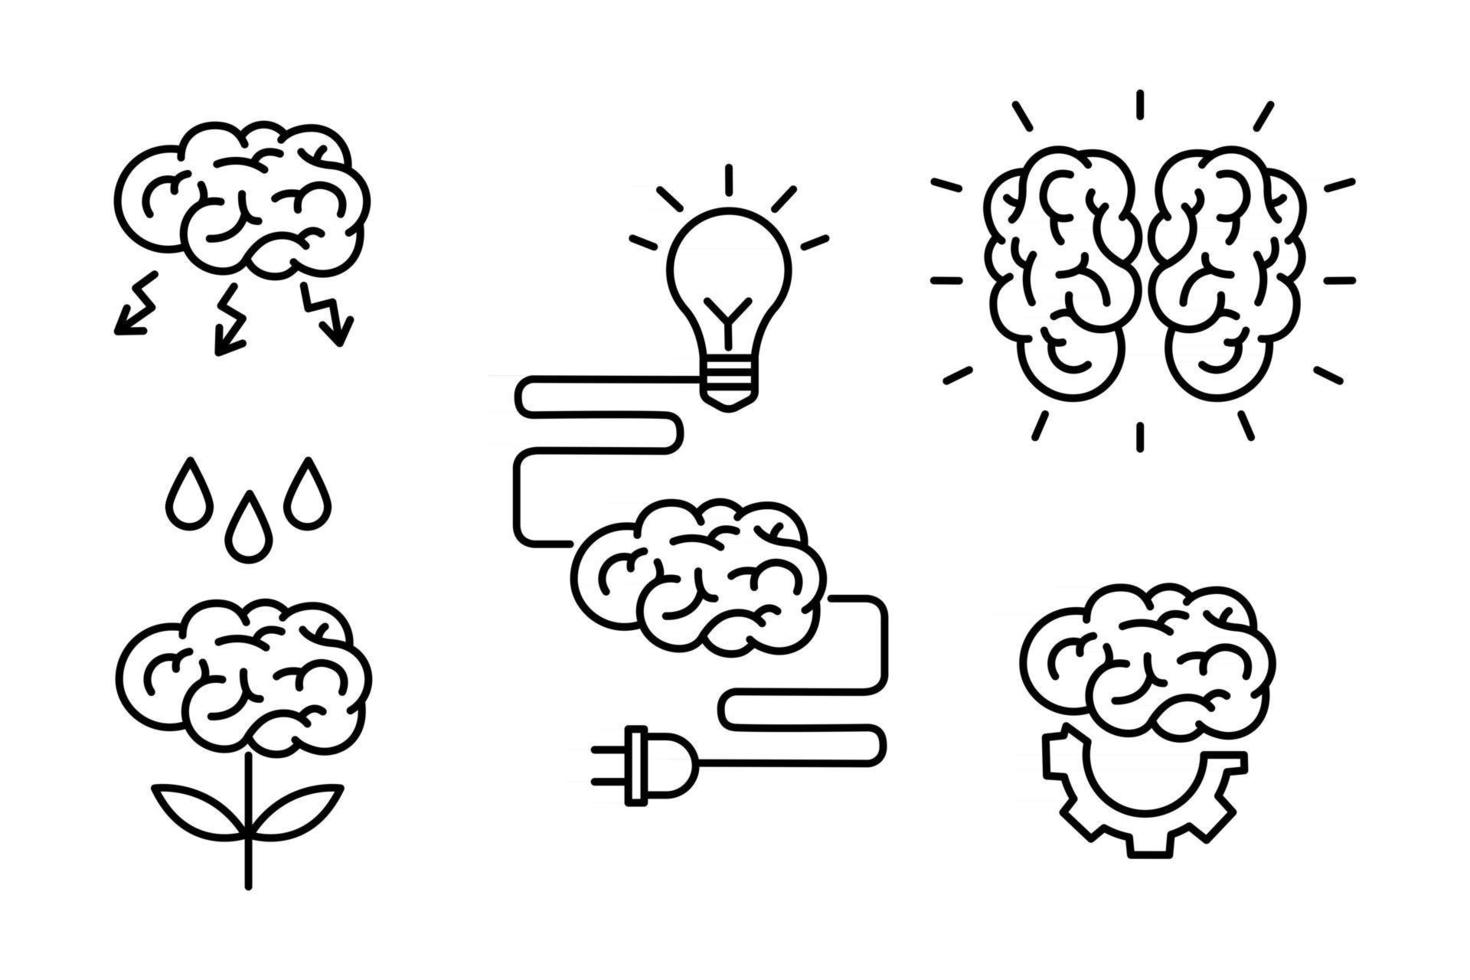 cervello, brainstorming, idea, creatività,concetto di conoscenza imposta icone in stile contorno. raccolta di processi della mente umana, caratteristiche del cervello ed emozioni. illustrazione di scarabocchio di vettore. vettore